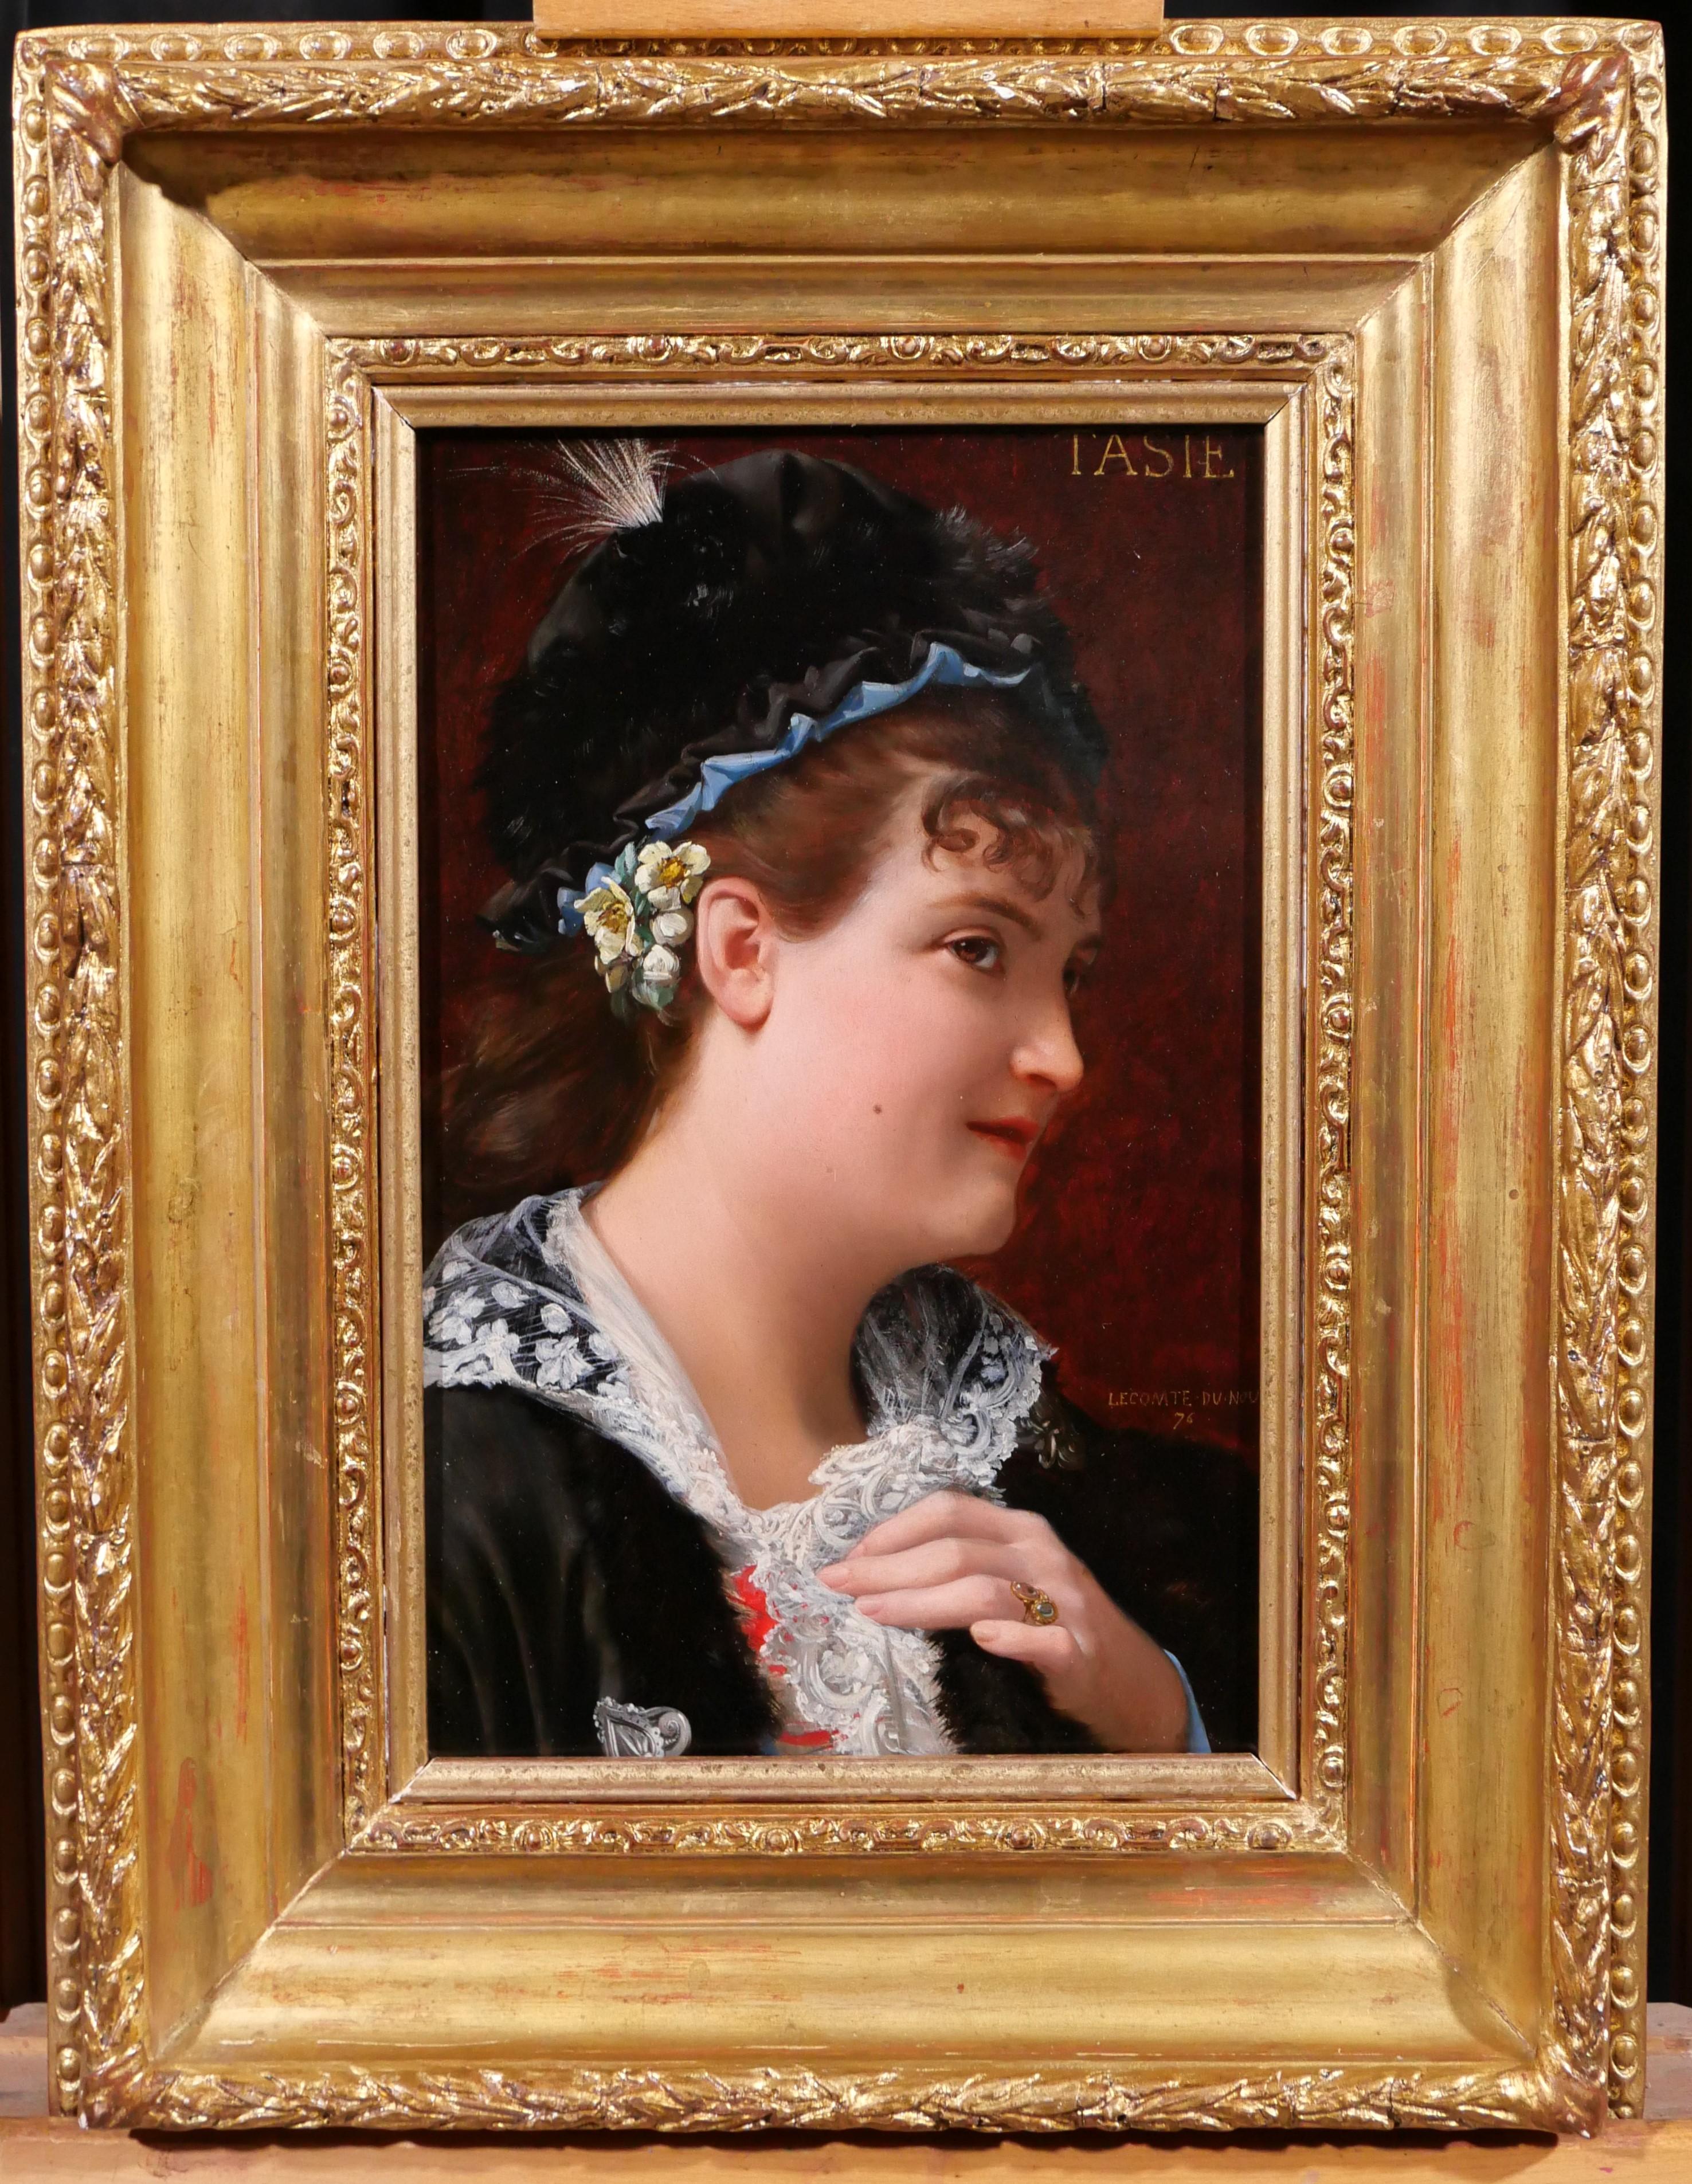 Portrait de femme, Tasie - Painting de Jean Jules Antoine LECOMTE DU NOÜY